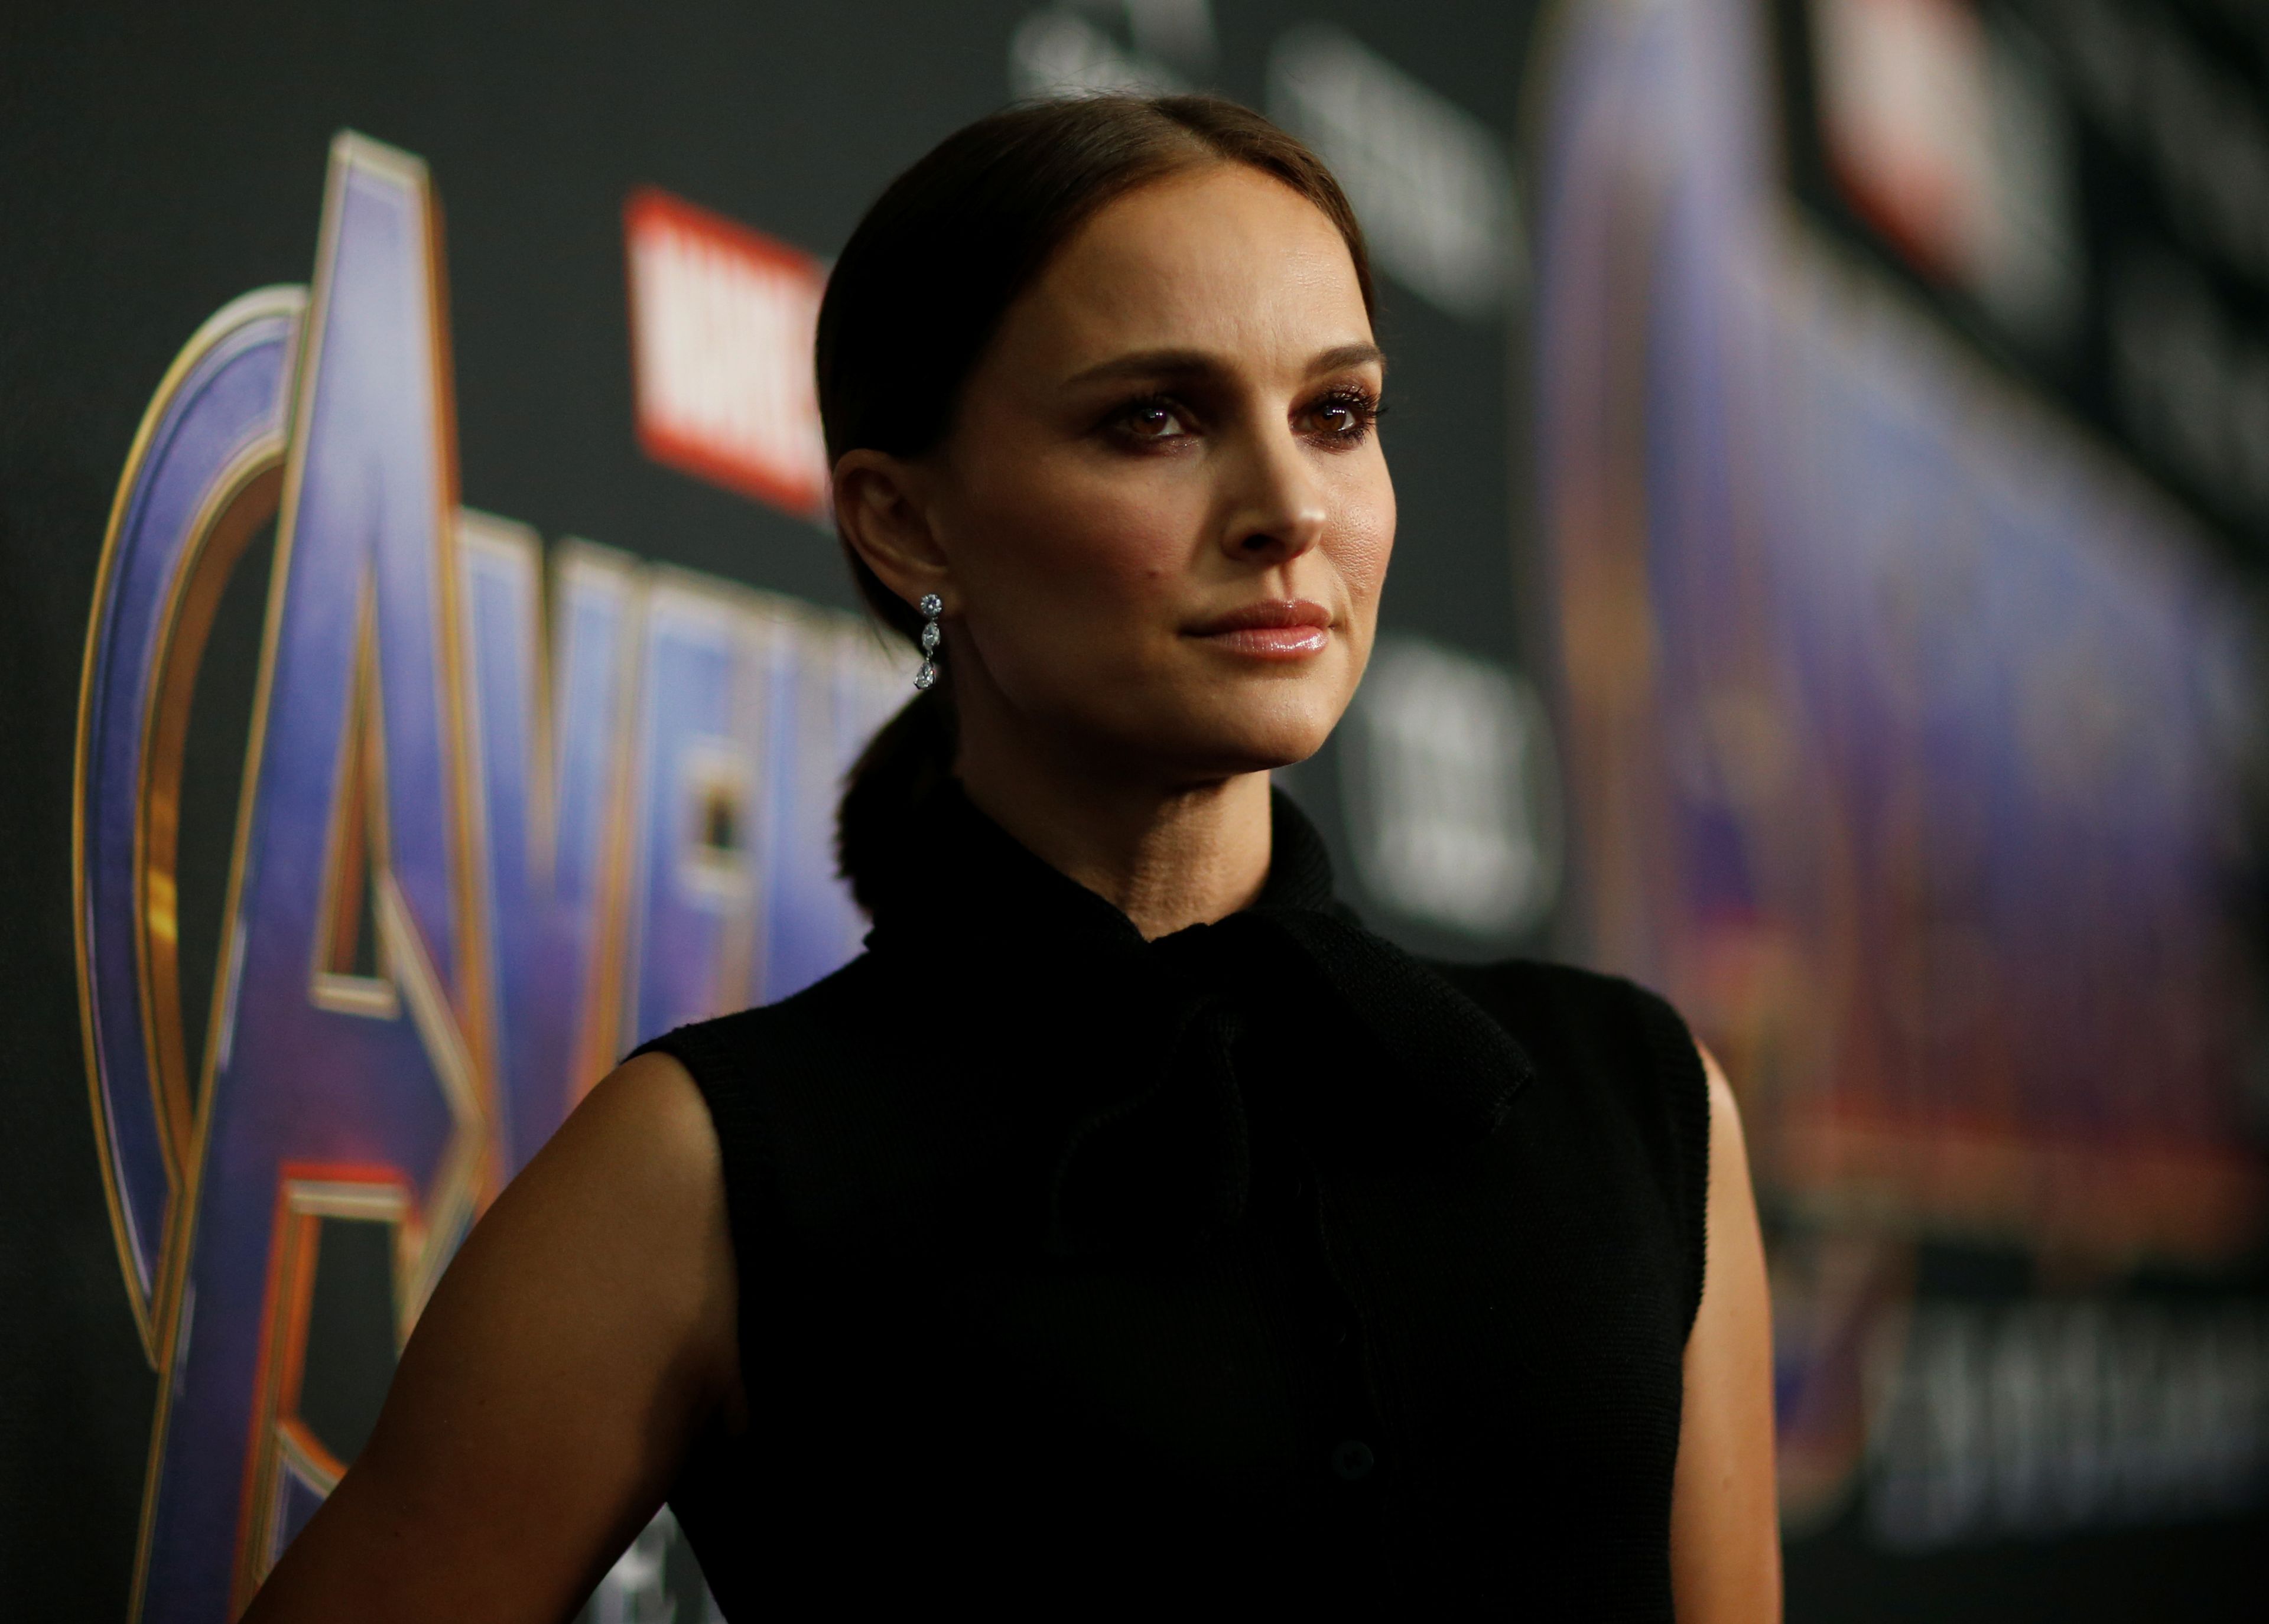 La actriz Natalie Portman en el estreno mundial de la película "The Avengers: Endgame" en Los Ángeles.